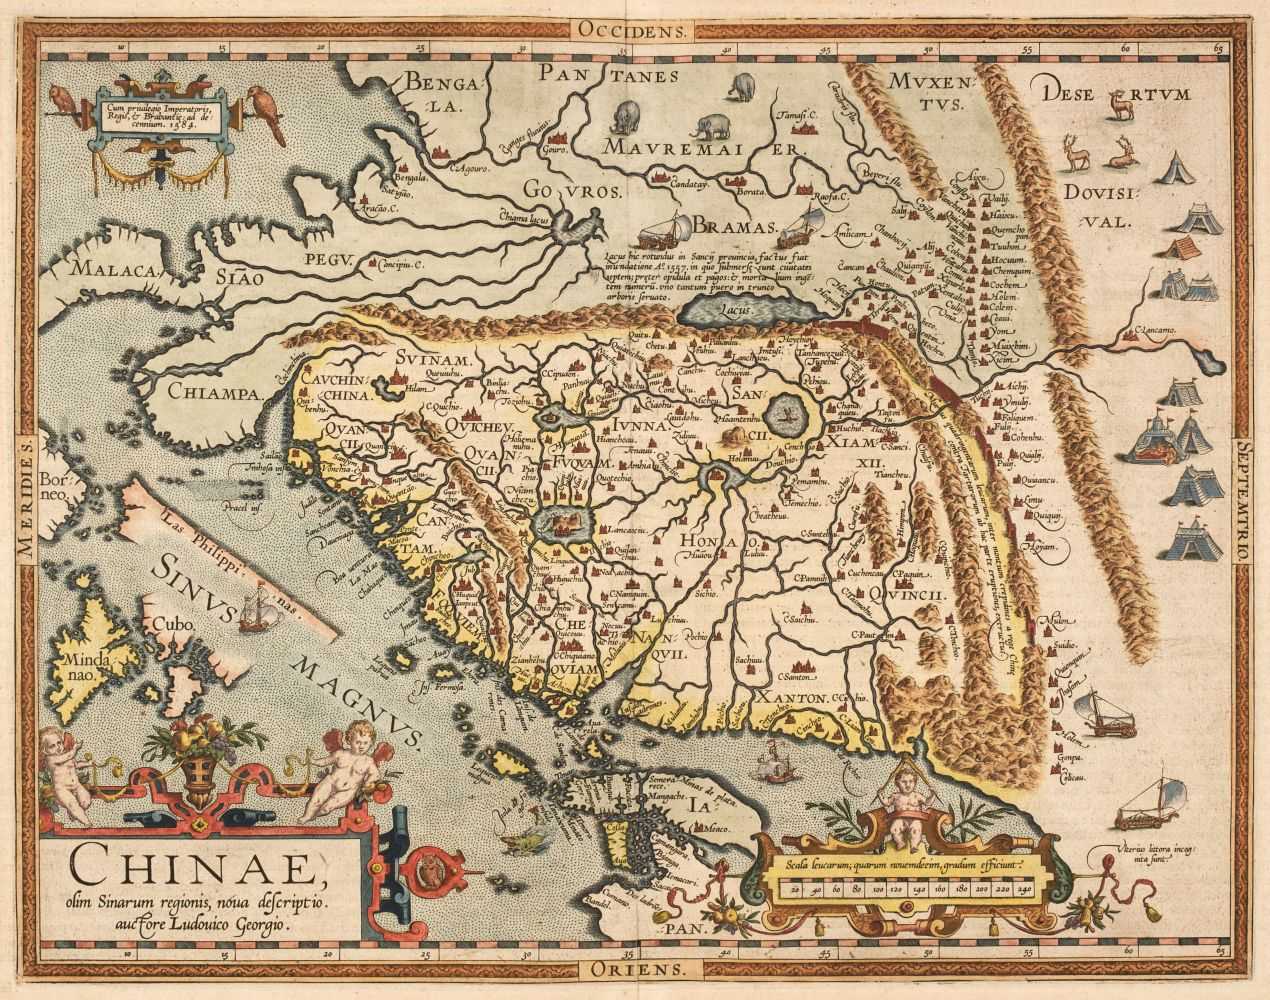 Lot 95 - China. Ortelius (Abraham), Chinae olim Sinarum regionis nova descriptio..., Antwerp [1603]